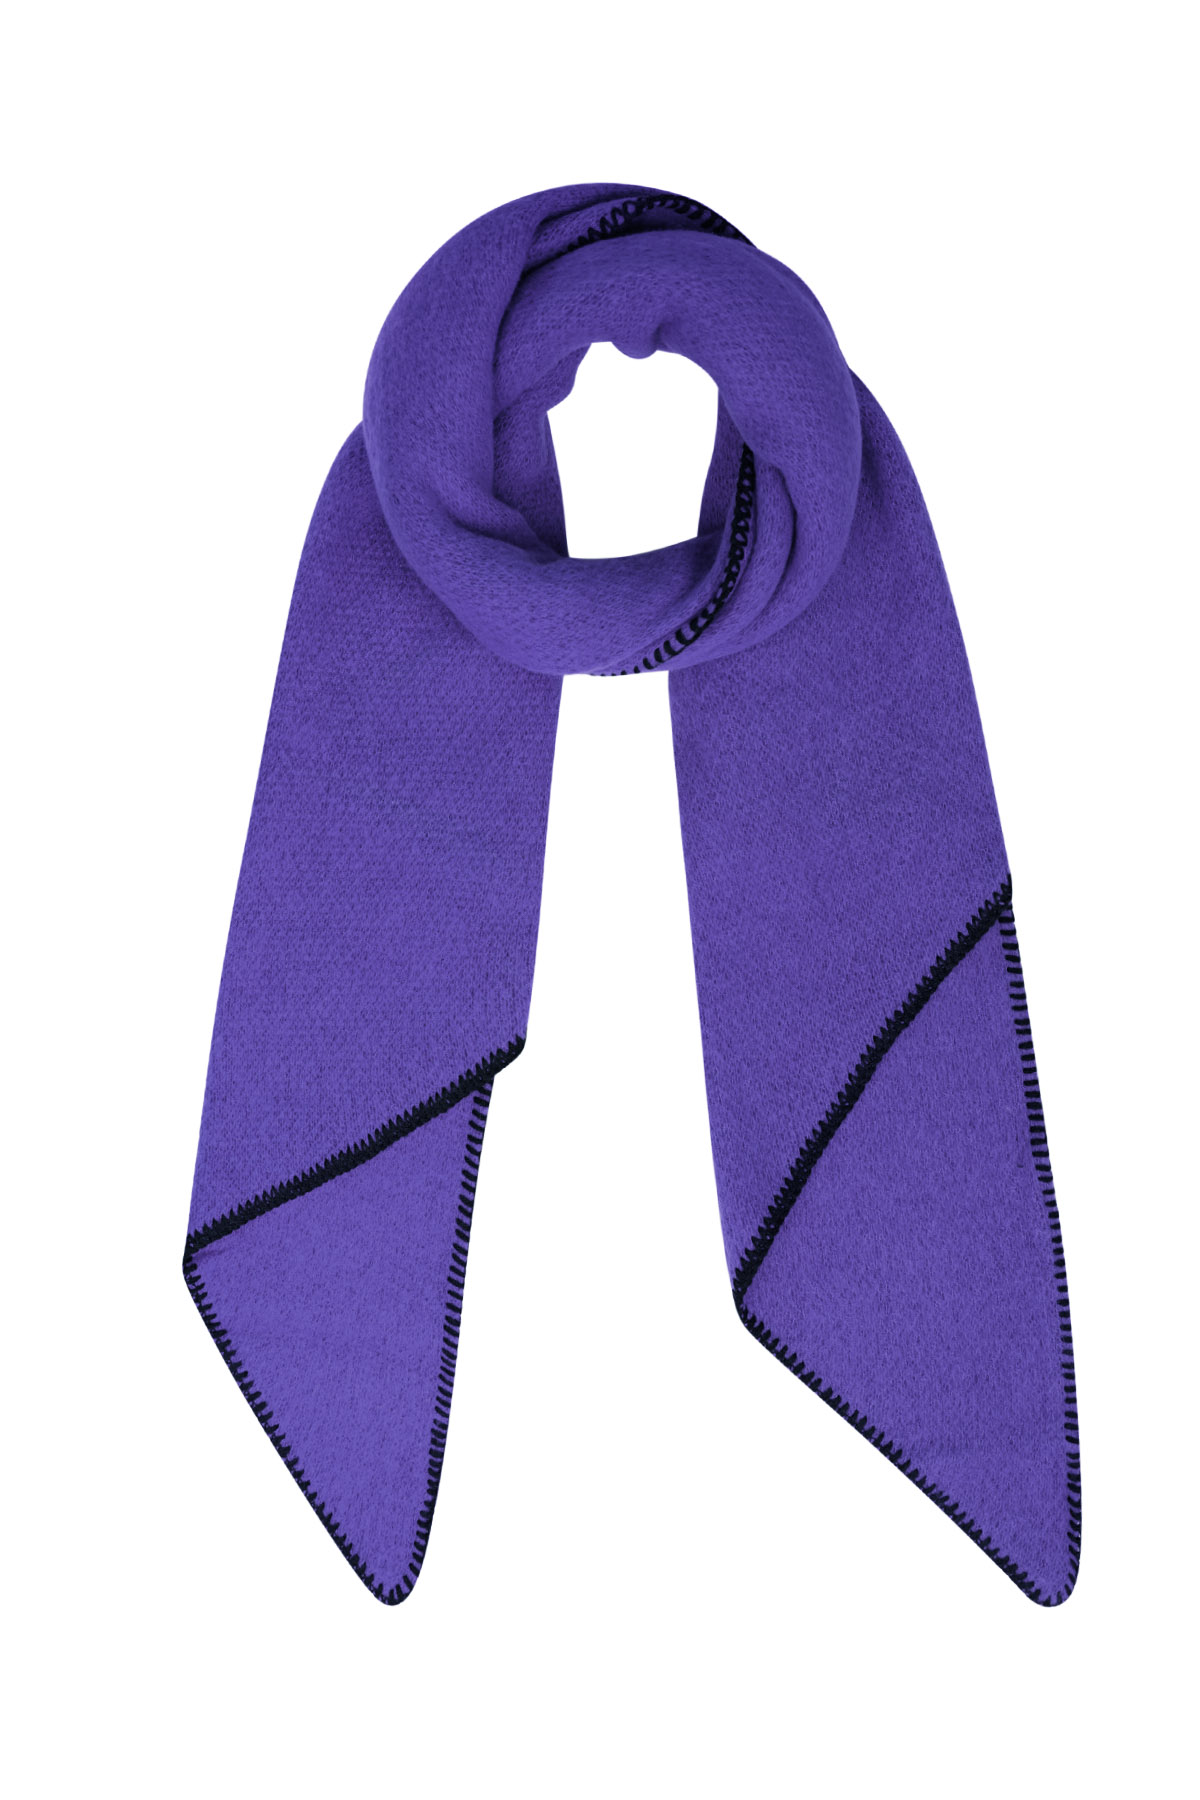 Sciarpa invernale monocolore con cuciture nere - viola h5 